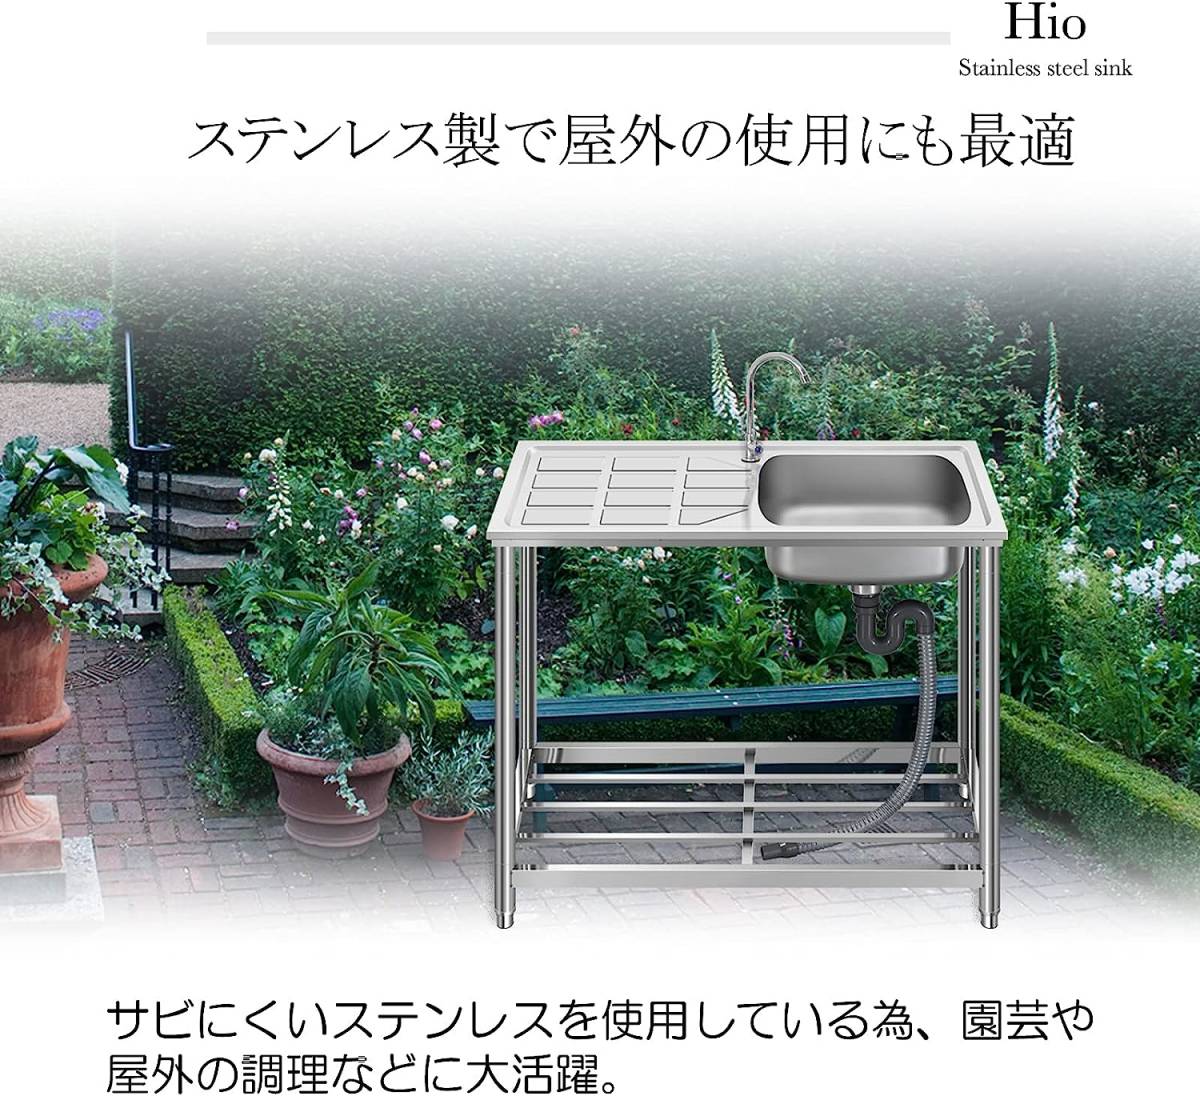 流し台 ステンレス製 蛇口水栓付き 蛇口左右に付けれる 屋外 簡易式 キッチン用 ガーデンシンク コンパクト BBQ _画像6